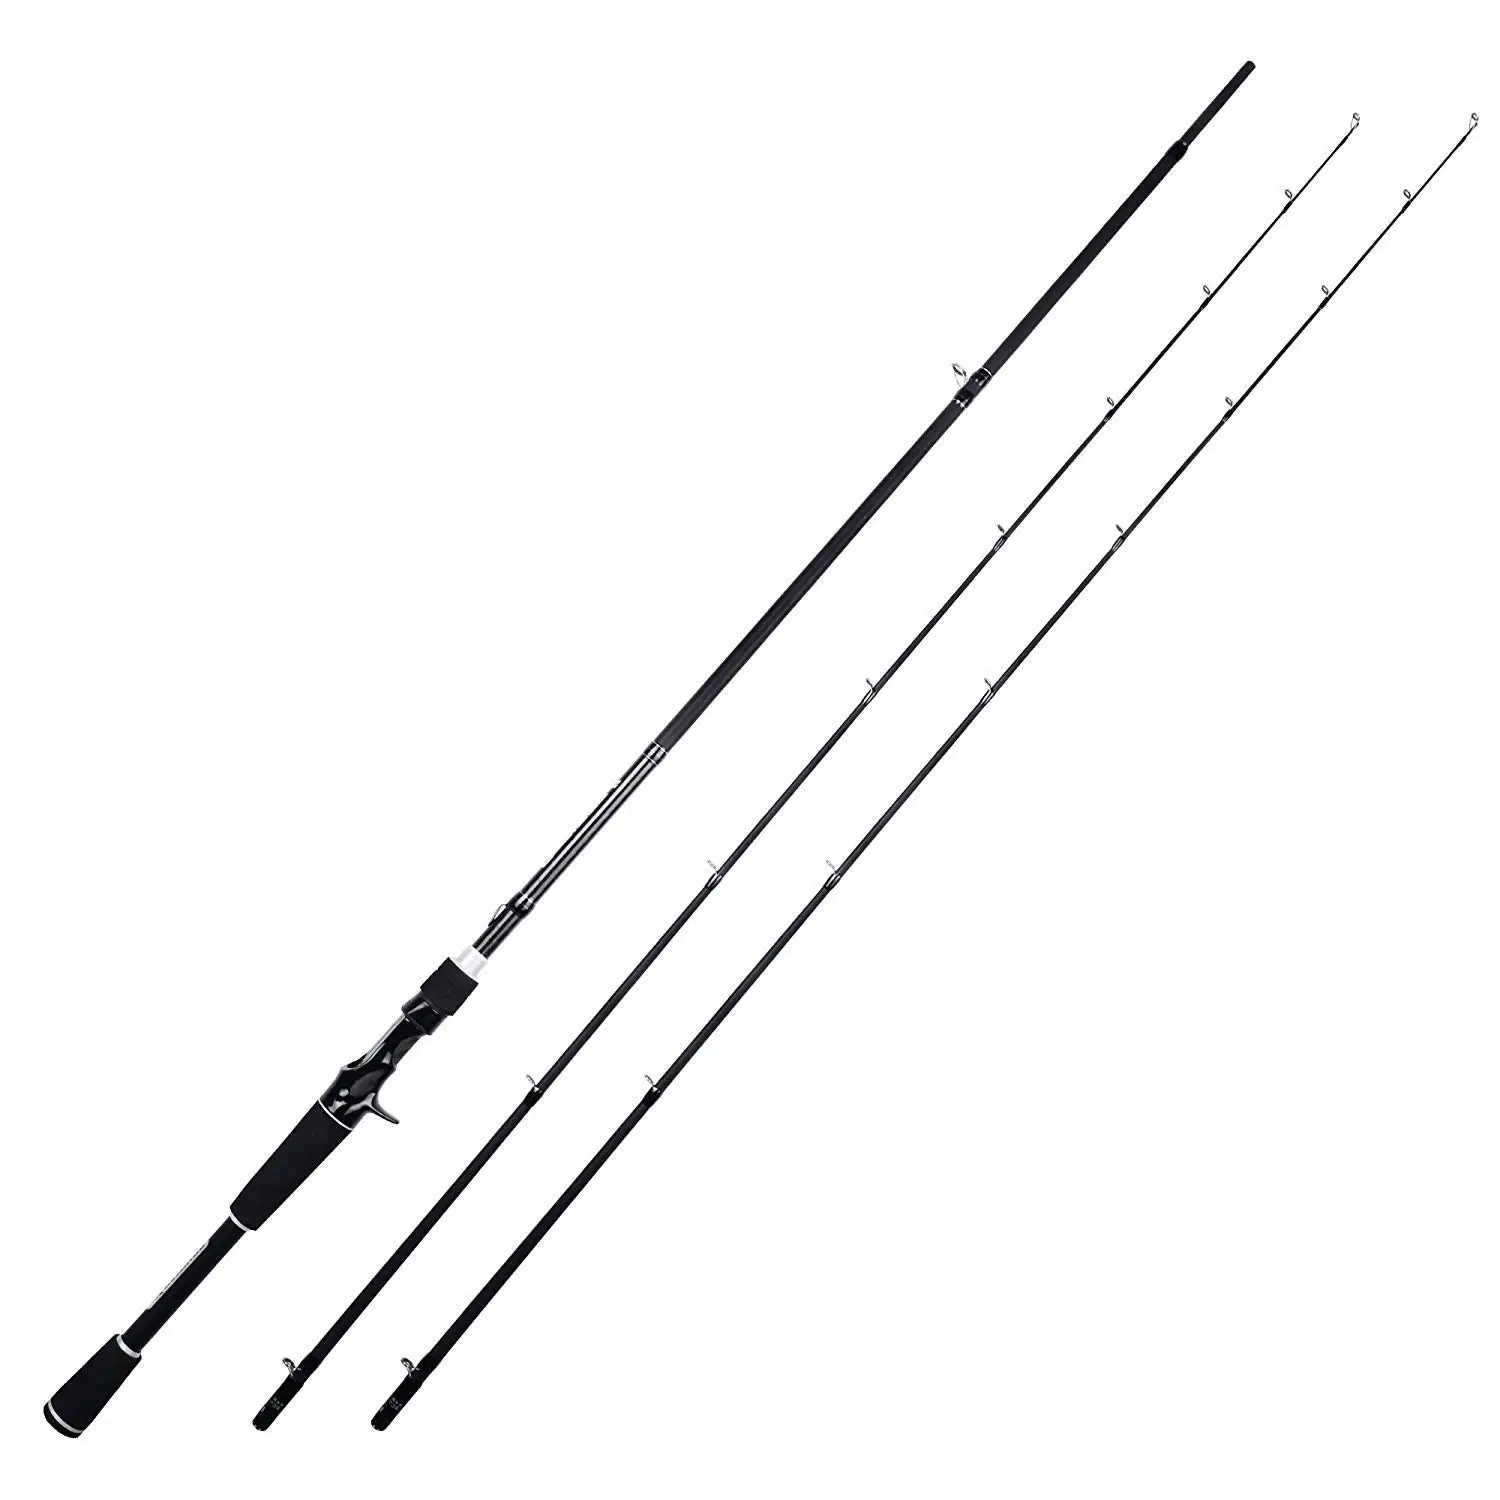 Buy KastKing Perigee II Fishing Rods - Fuji O-ring Line Guides, 24 Ton ...